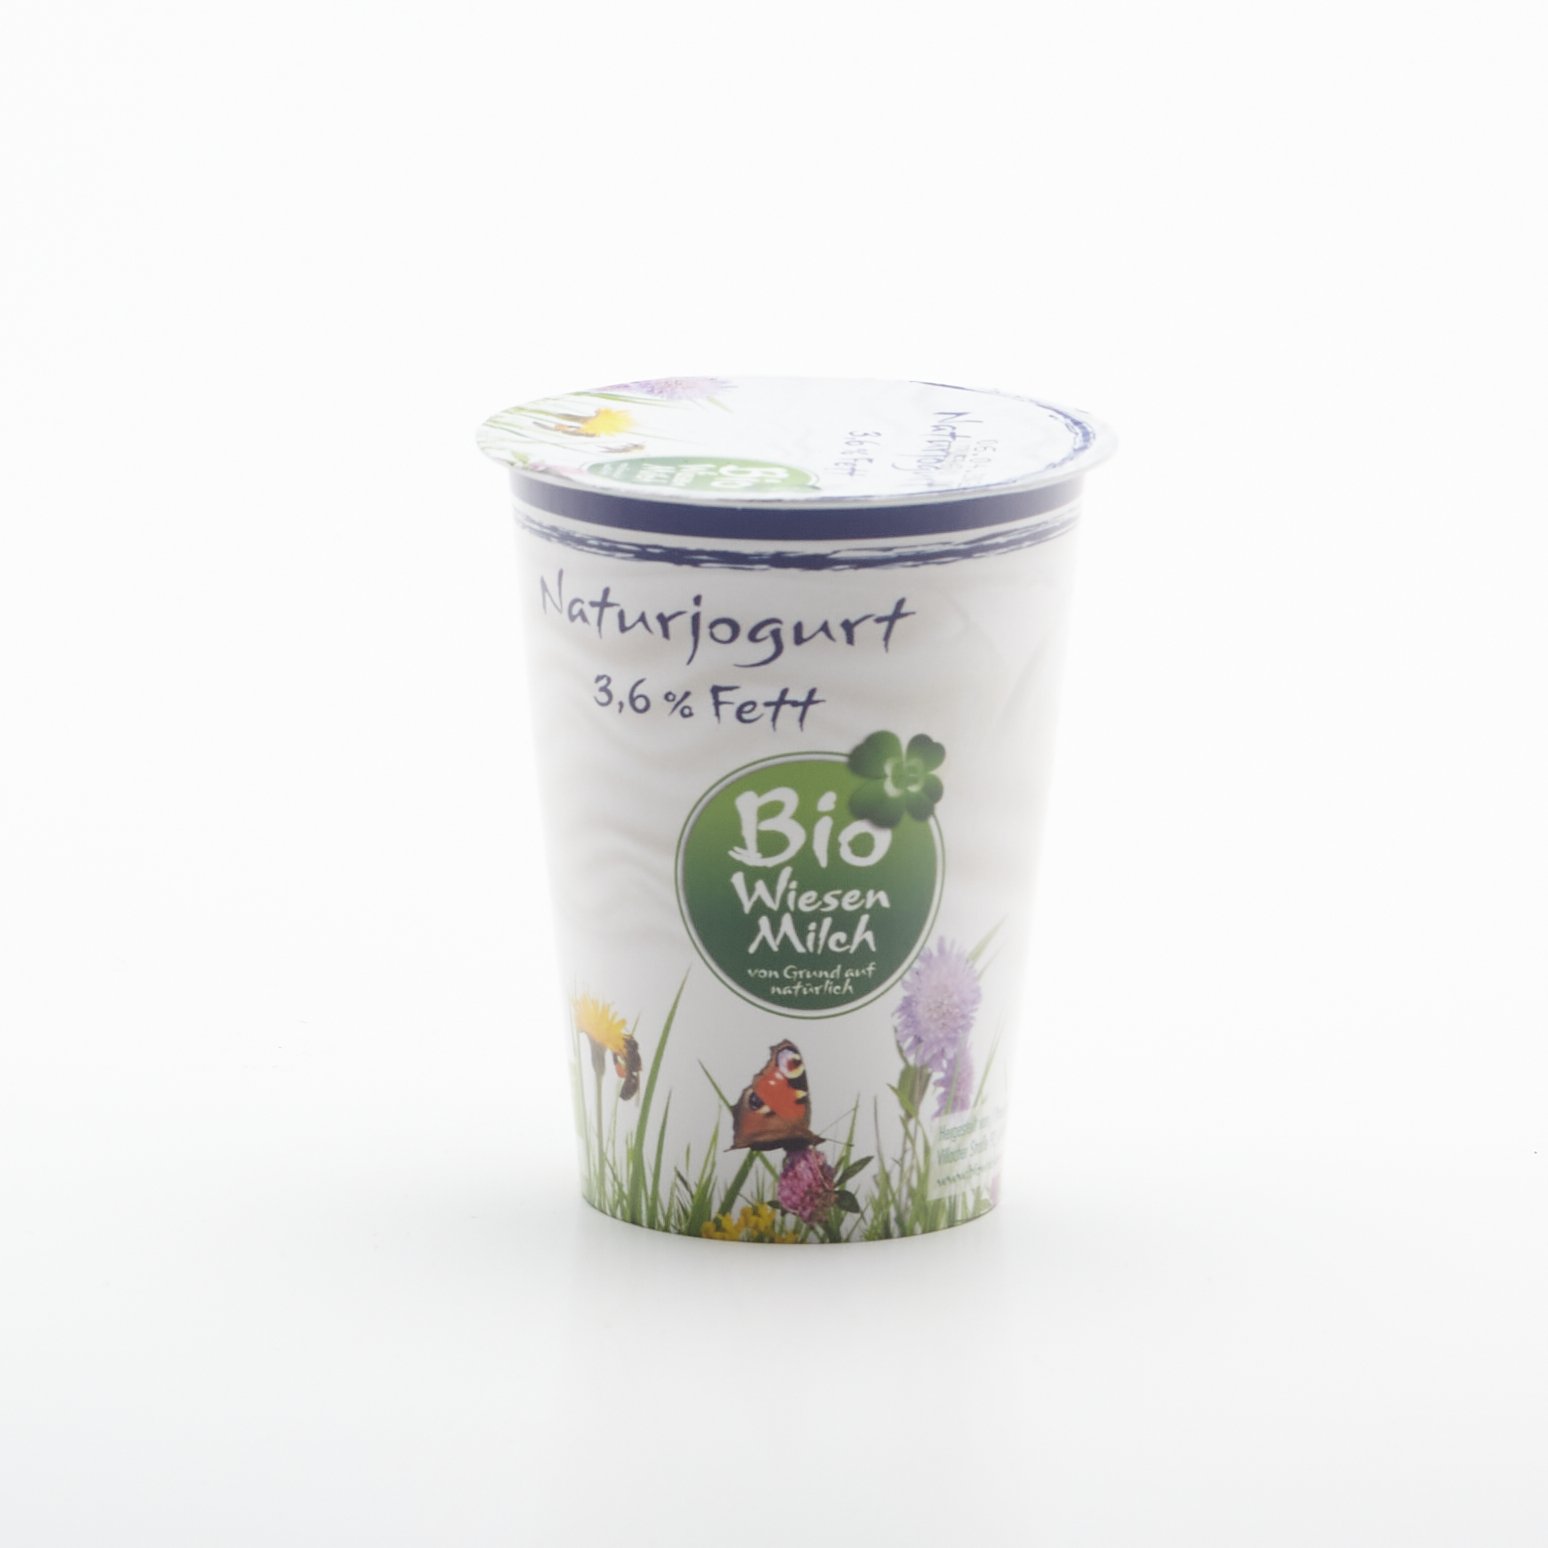 BIO Natur jogurt 3,6% 200g